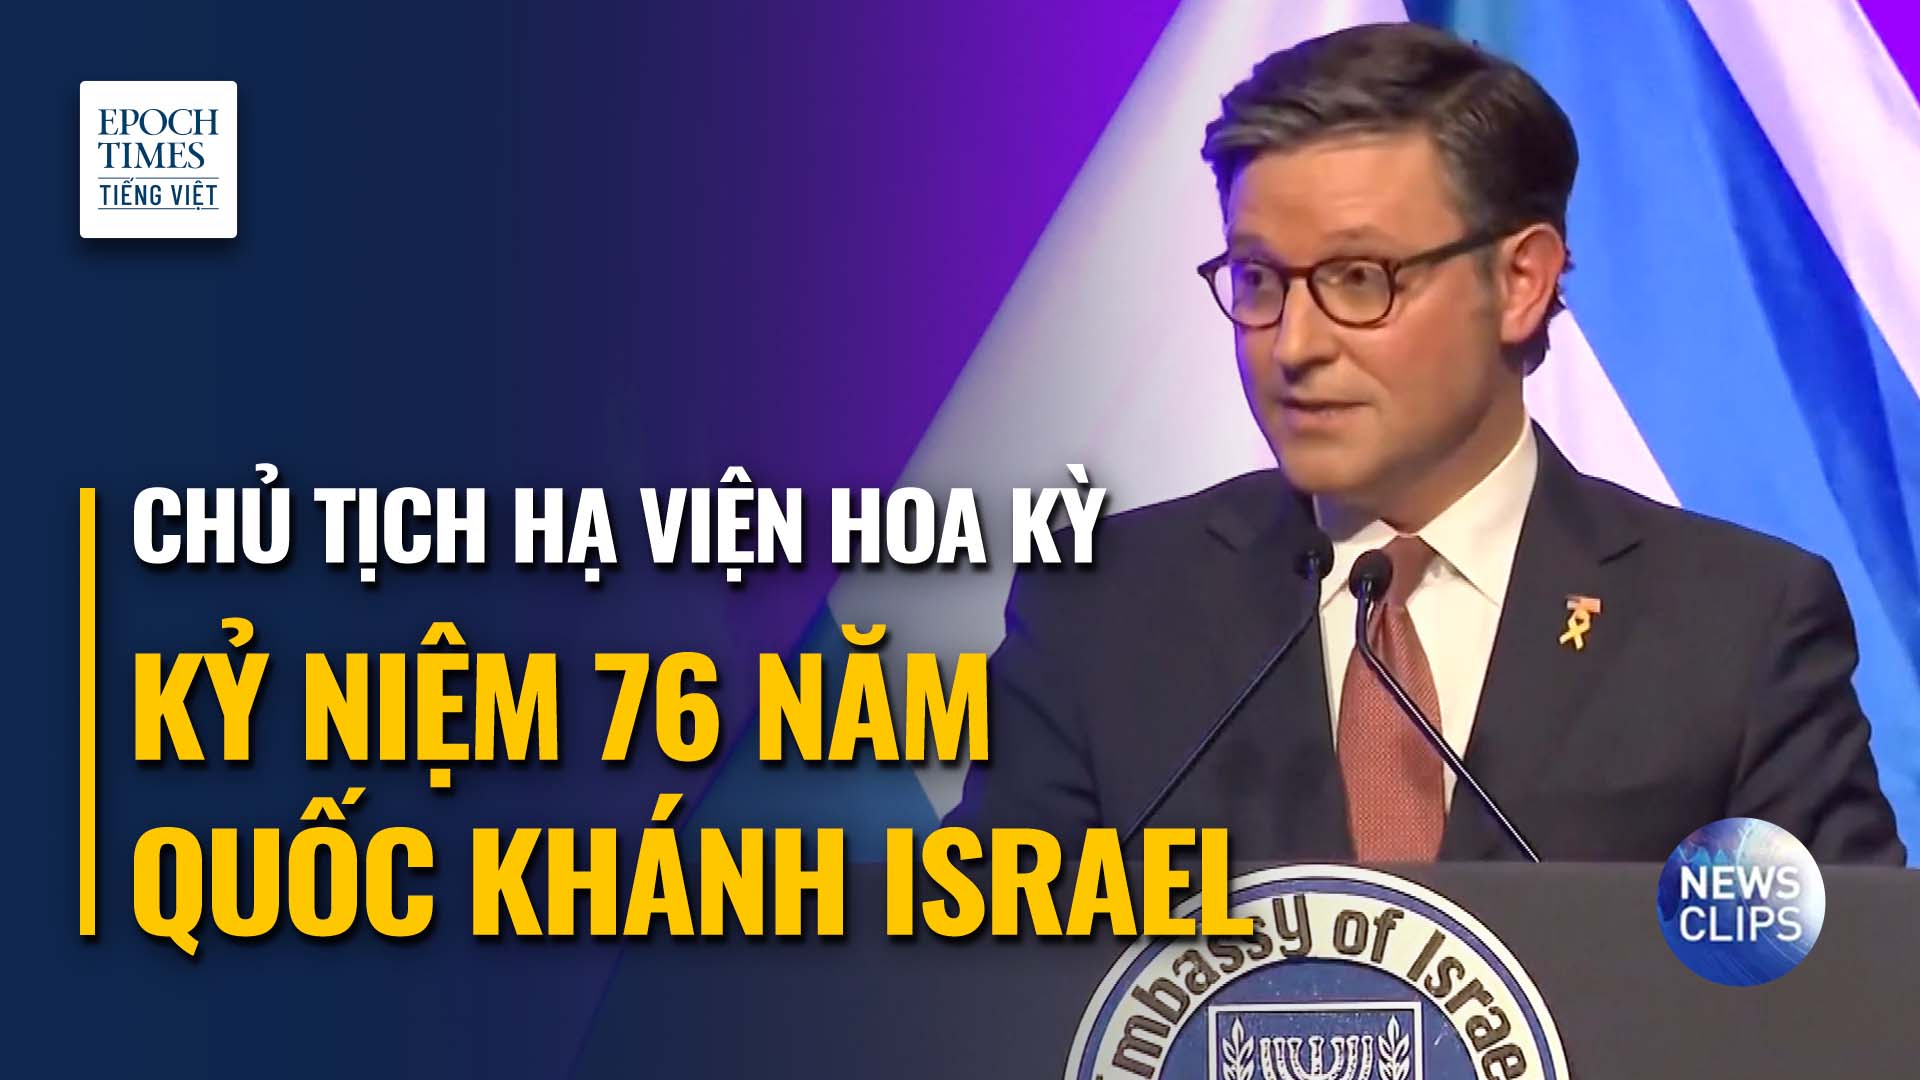 Chủ tịch Hạ viện Hoa Kỳ chúc mừng kỷ niệm Quốc khánh Israel lần thứ 76